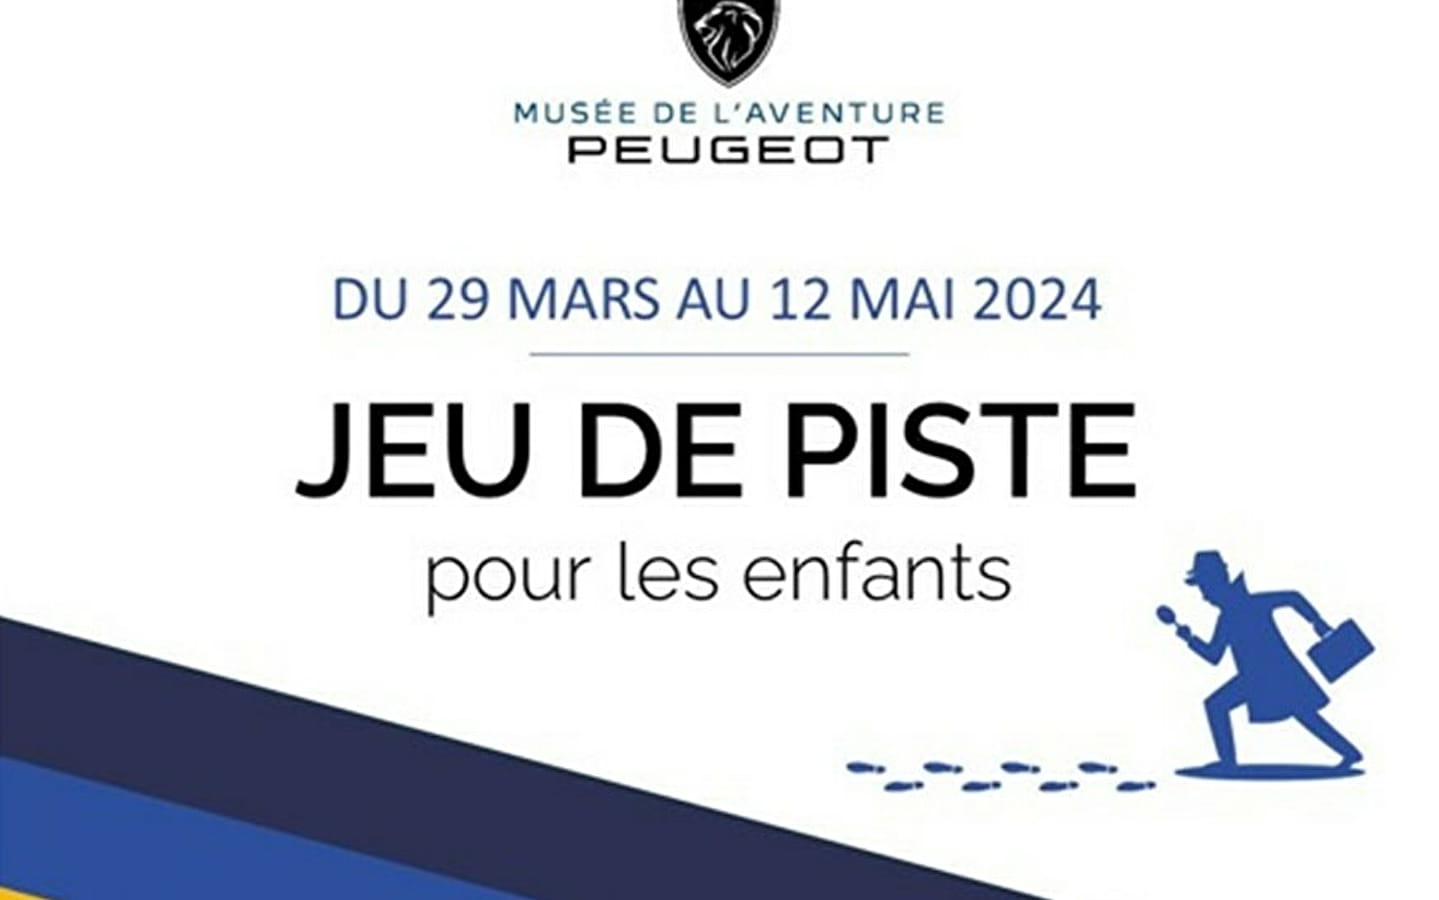 Schattenjacht: Peugeot Avonturenmuseum 